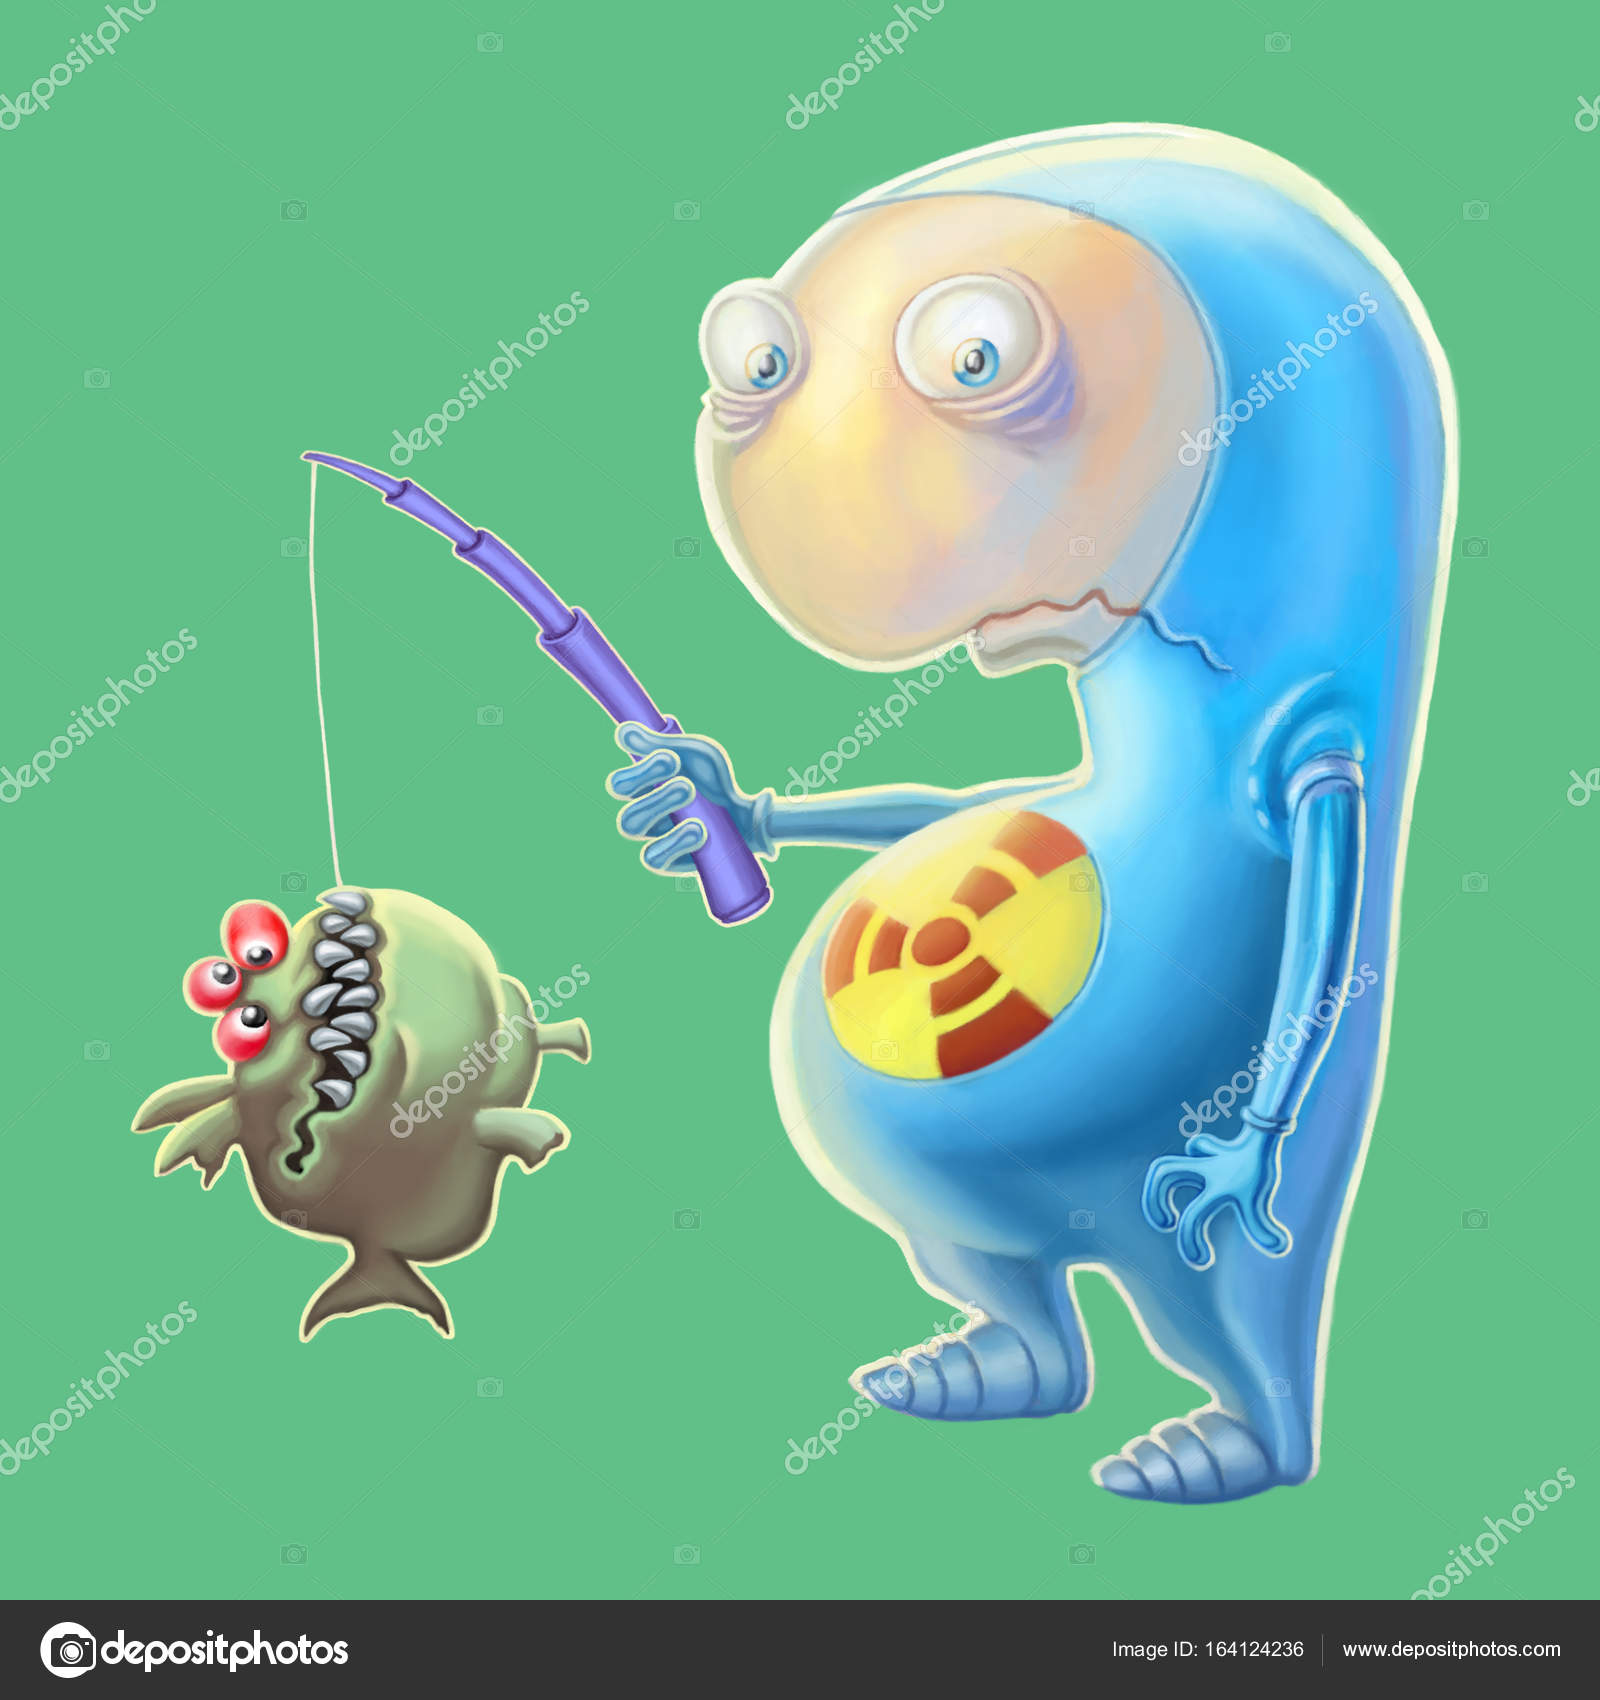 Uma ilustração dos desenhos animados de um alienígena roxo com